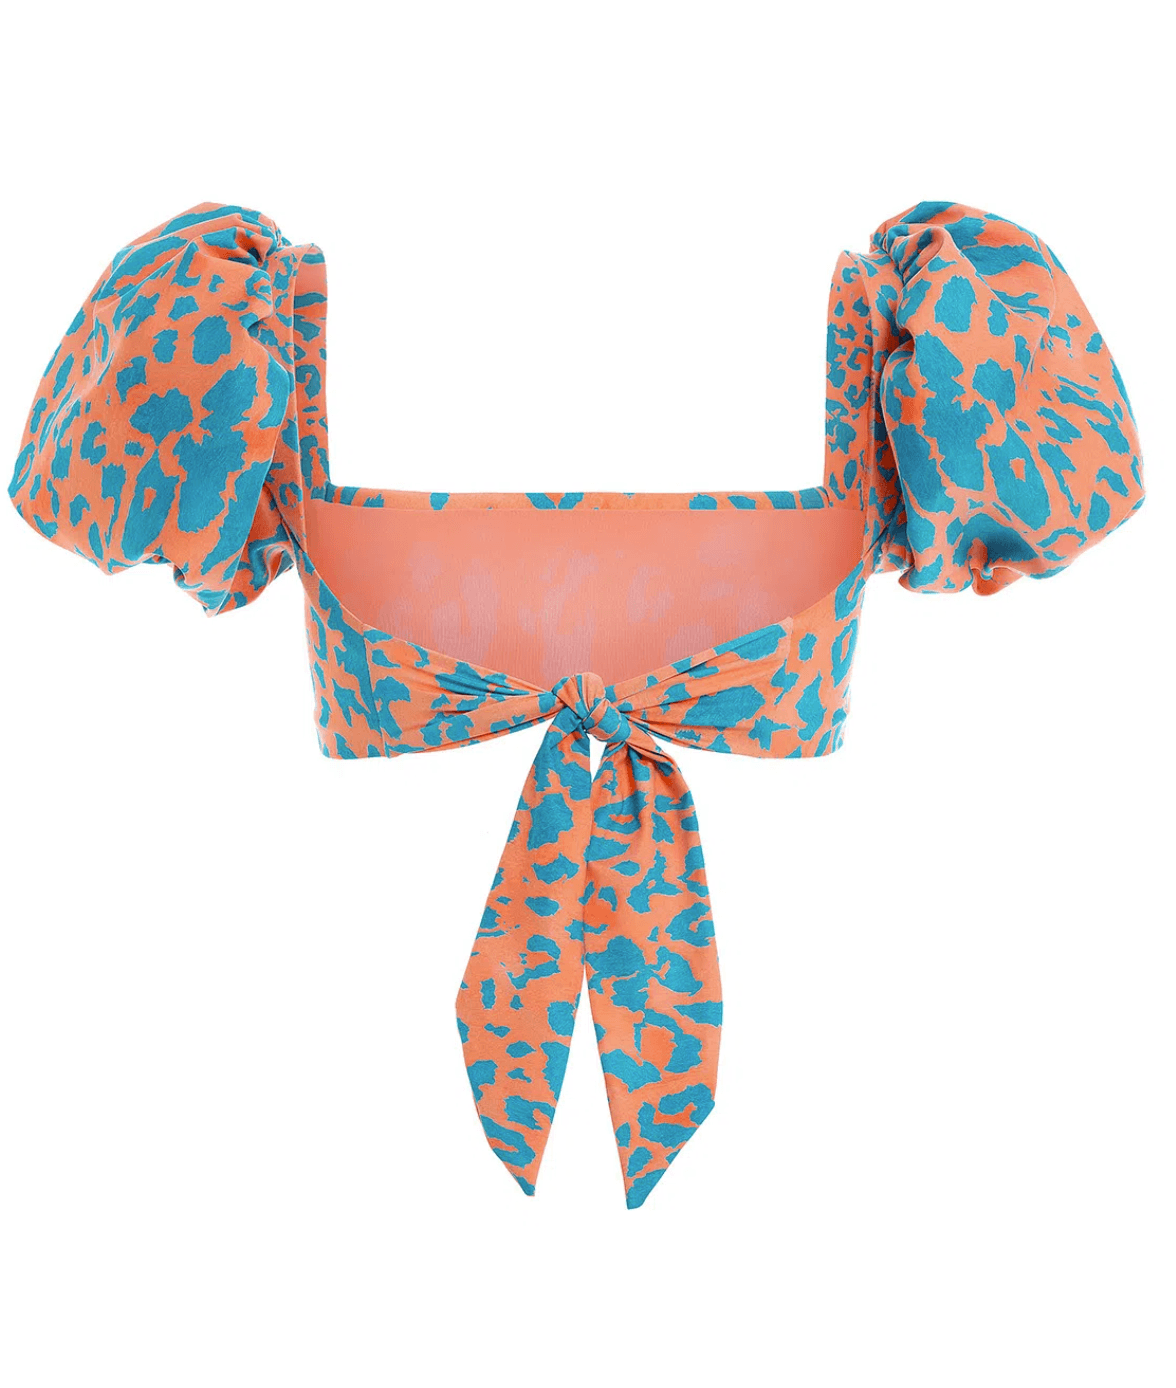 Agua Bendita - Calista Bikini Top in Balam - OutDazl